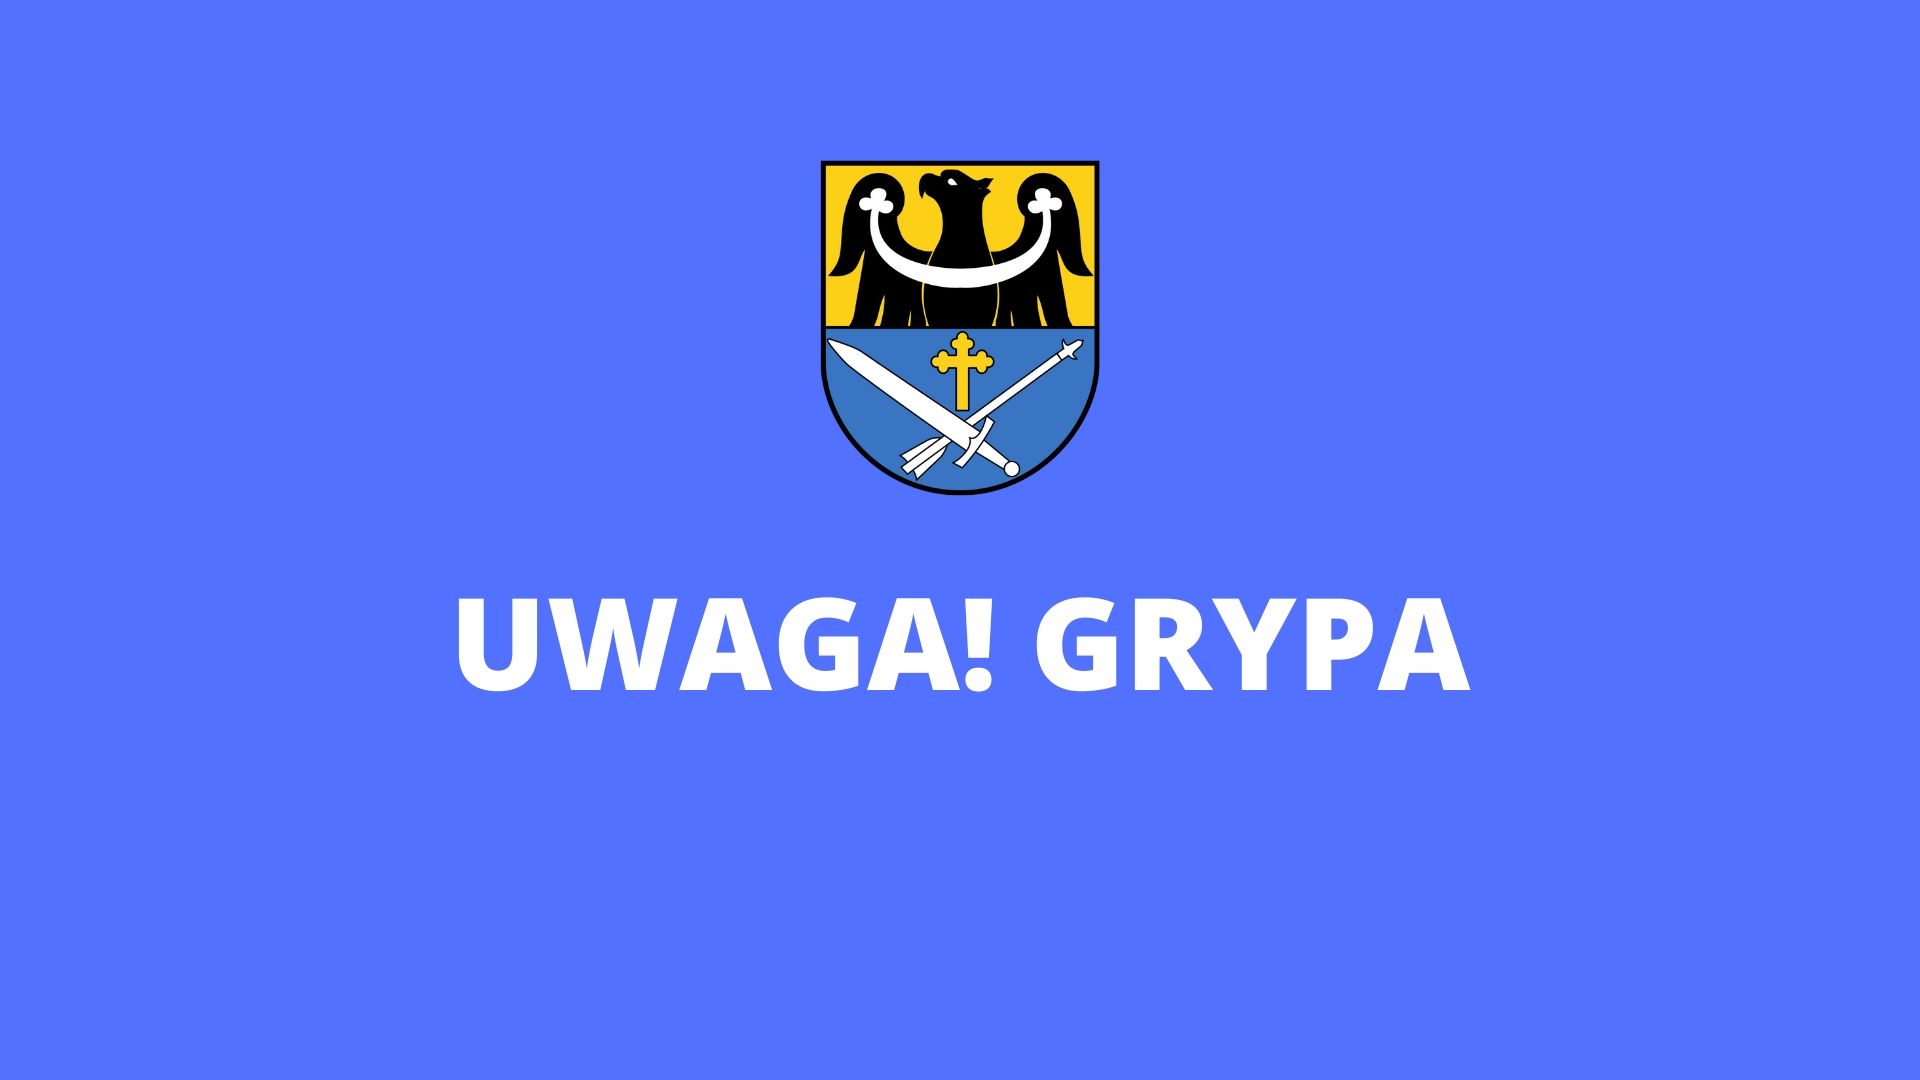 UWAGA GRYPA